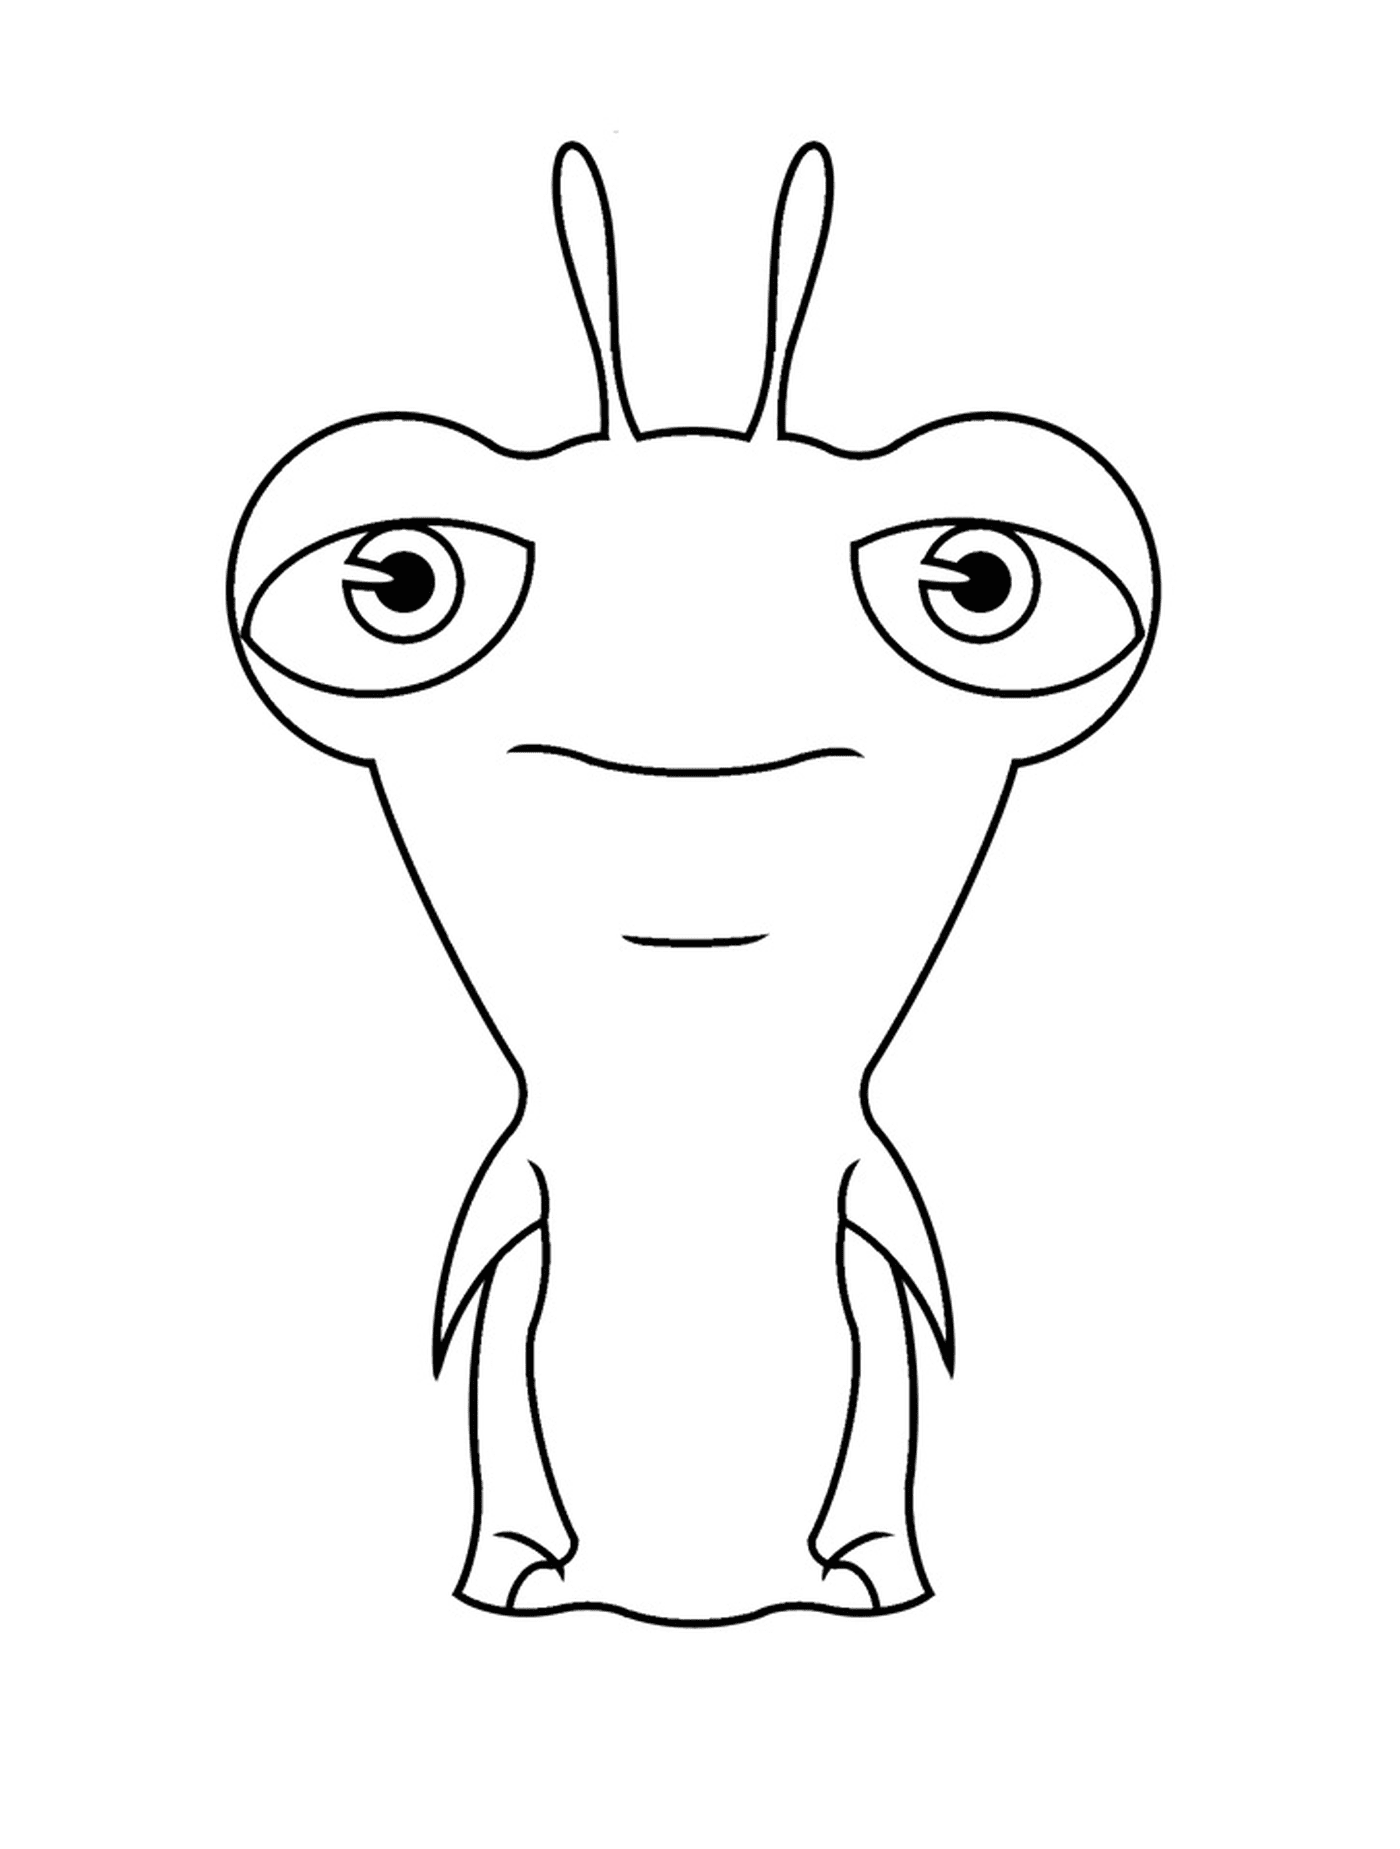  लिविनक्स, बड़ी आंखों के साथ कार्टून अक्षर 